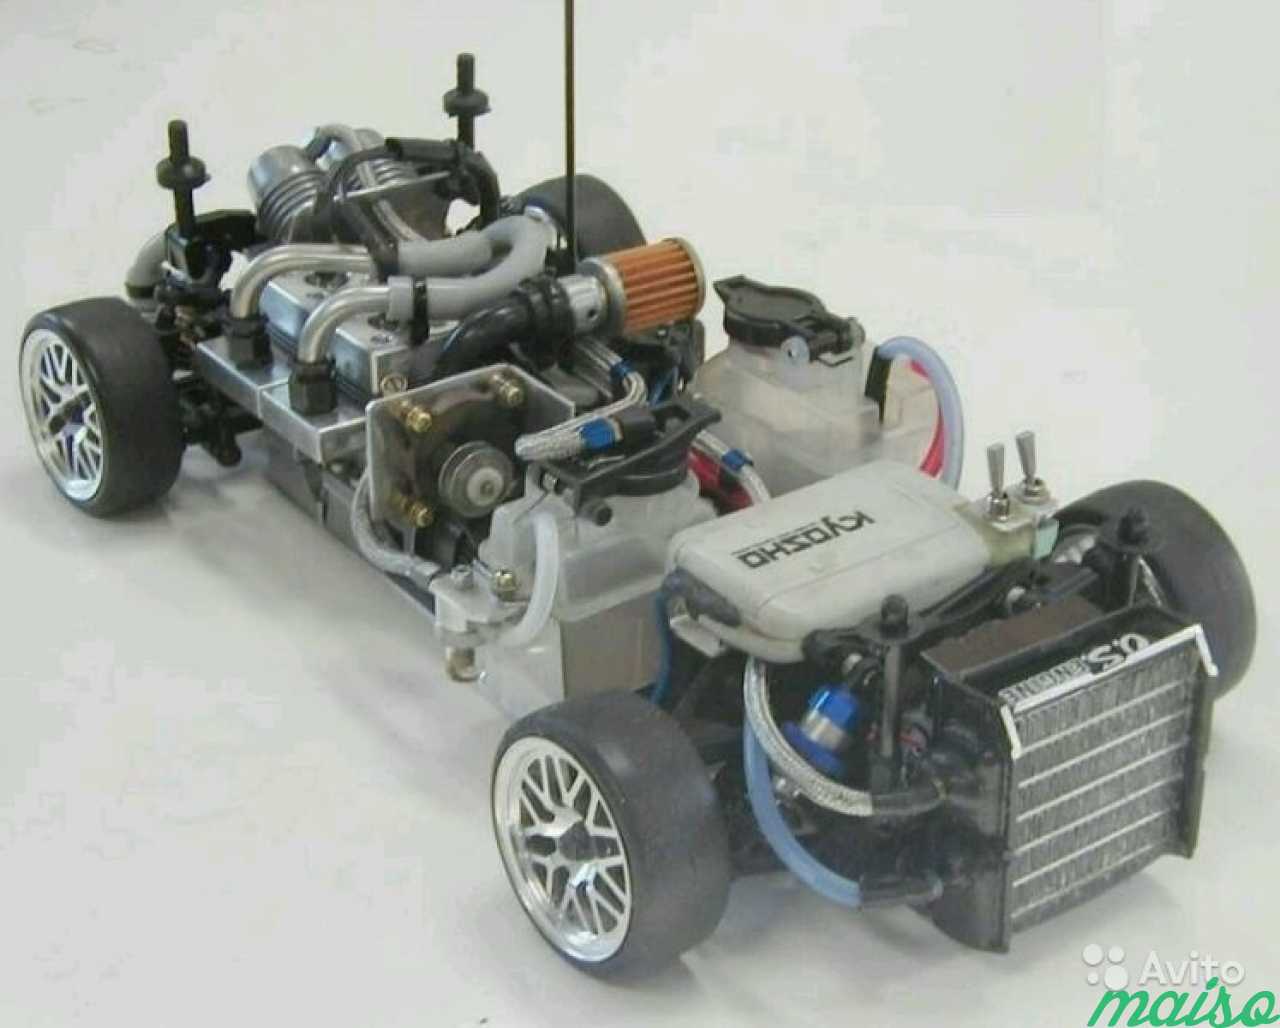 Радиоуправлении спб. Kyosho FW-05. RC 1:18 Nitro. Kyosho Mercedes Benz RC. RC модели мотор 10 см2 ДВС.